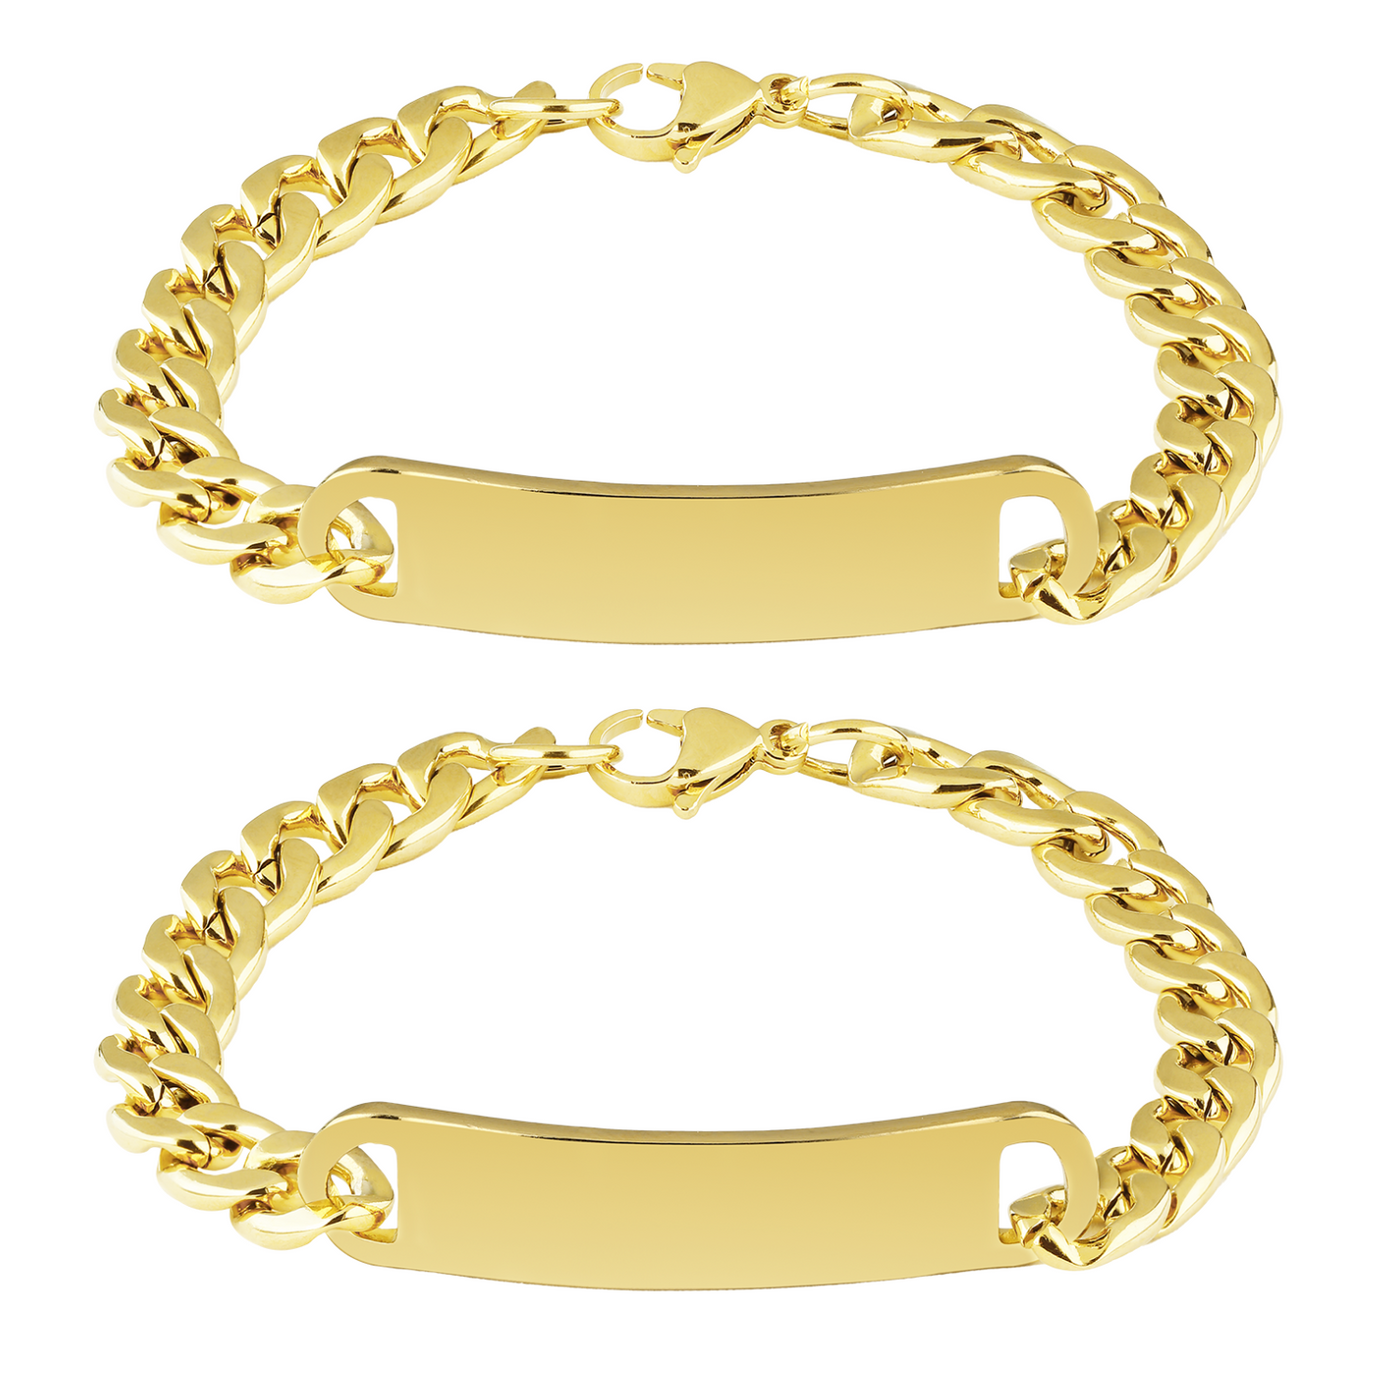 Golden ID partner bracelet with engraving (wide)